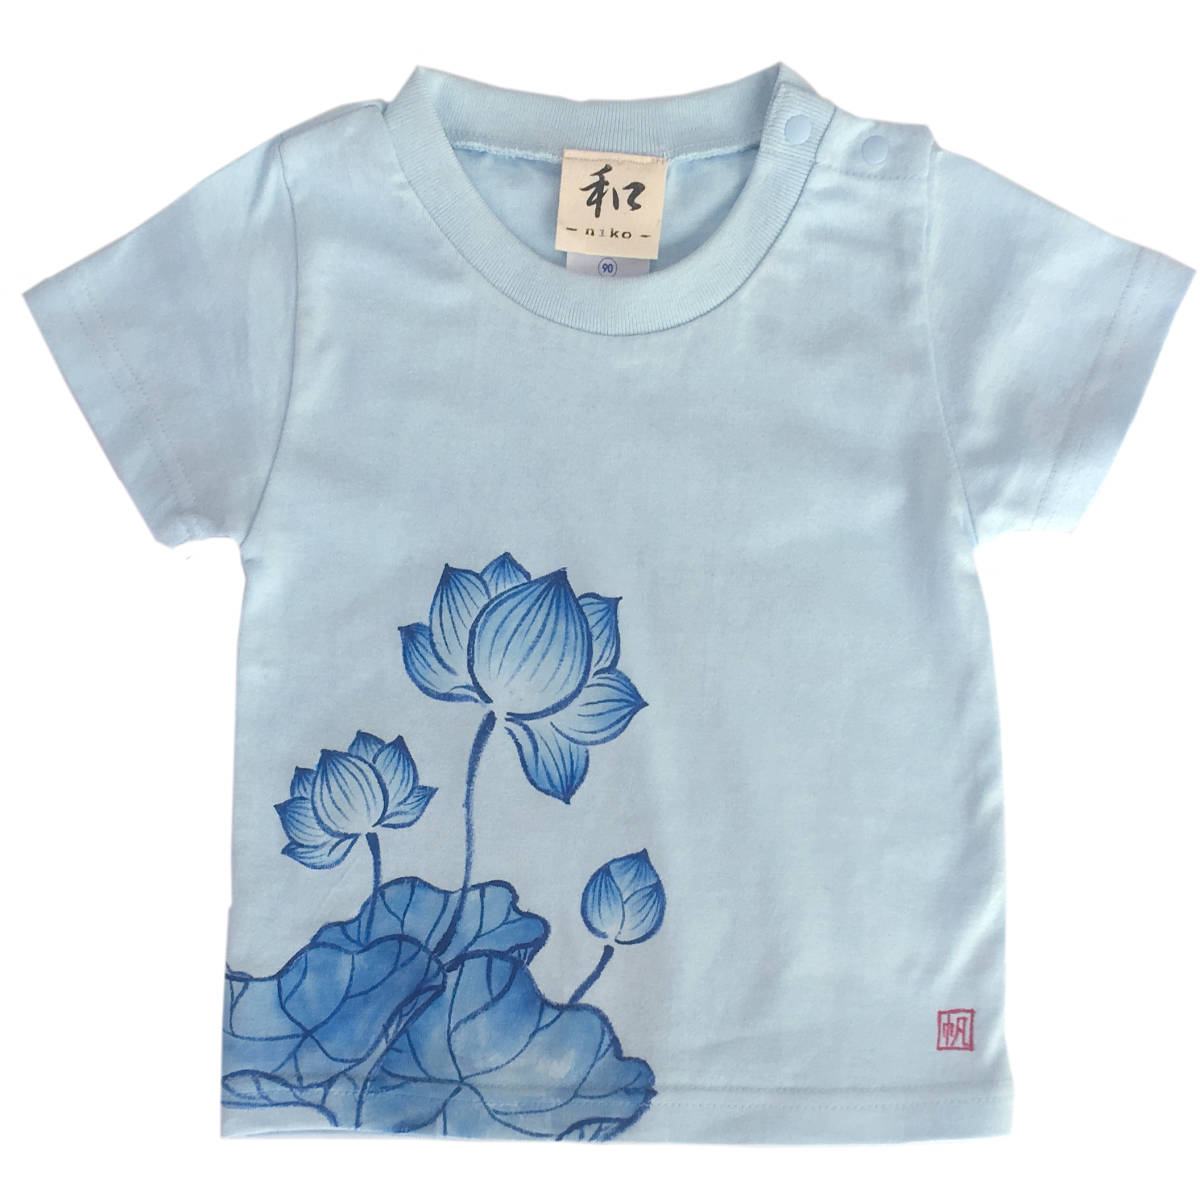 キッズ Tシャツ 140サイズ ブルー 蓮柄Tシャツ 手描きで描いた蓮の花柄Tシャツ 半袖 和柄 和風 レトロ ハンドメイド, トップス, 半袖Tシャツ, 140(135~144cm)